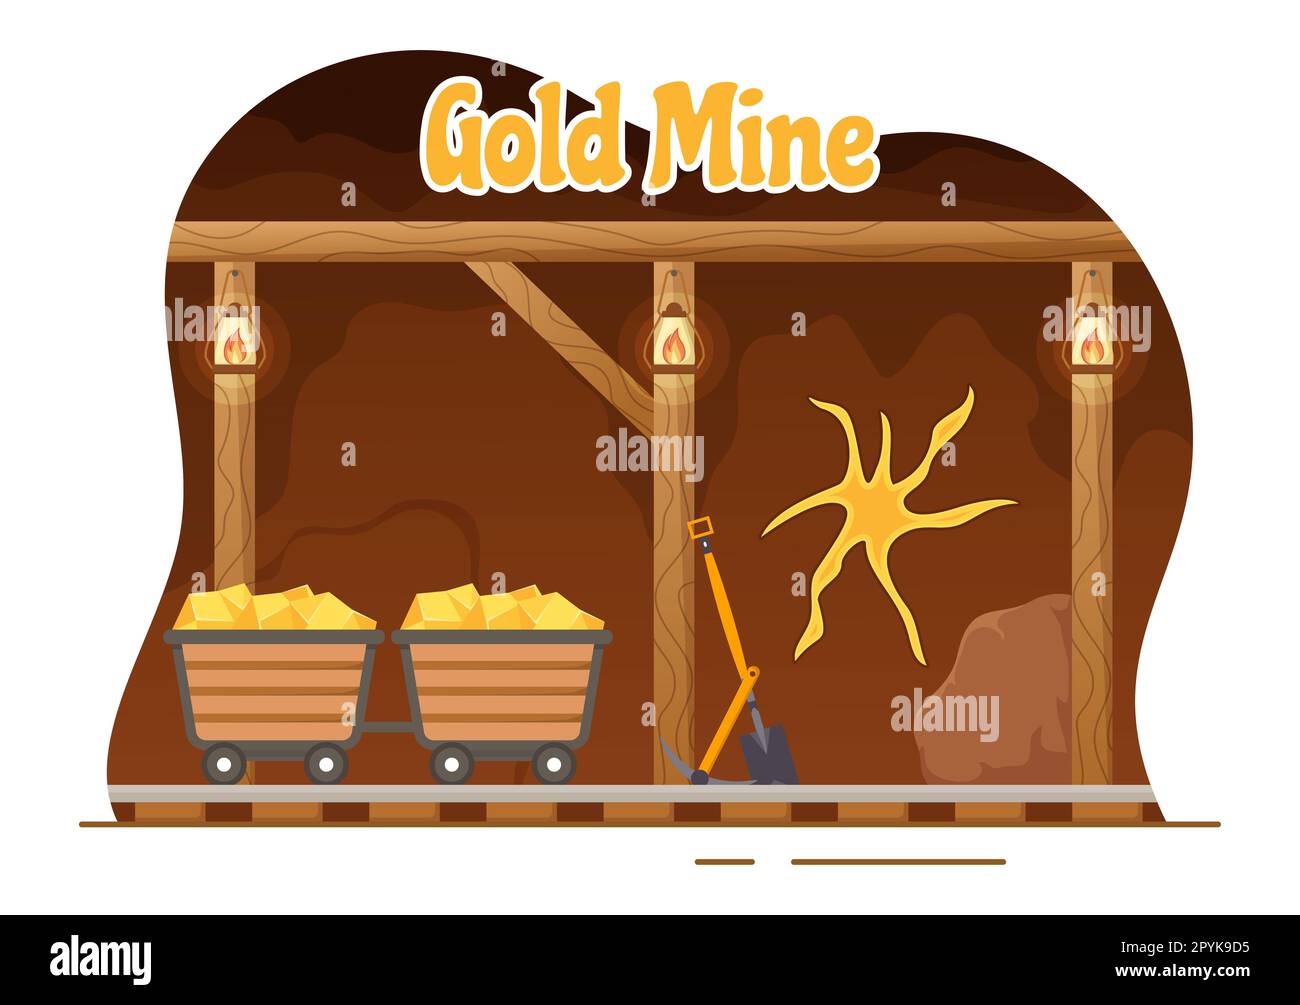 Abbildung der Goldmine mit Aktivitäten der Bergbauindustrie für Schätze, einen Haufen Münzen, Schmuck und Edelsteine in handgezeichneten Landing-Page-Vorlagen für flache Cartoons Stockfoto